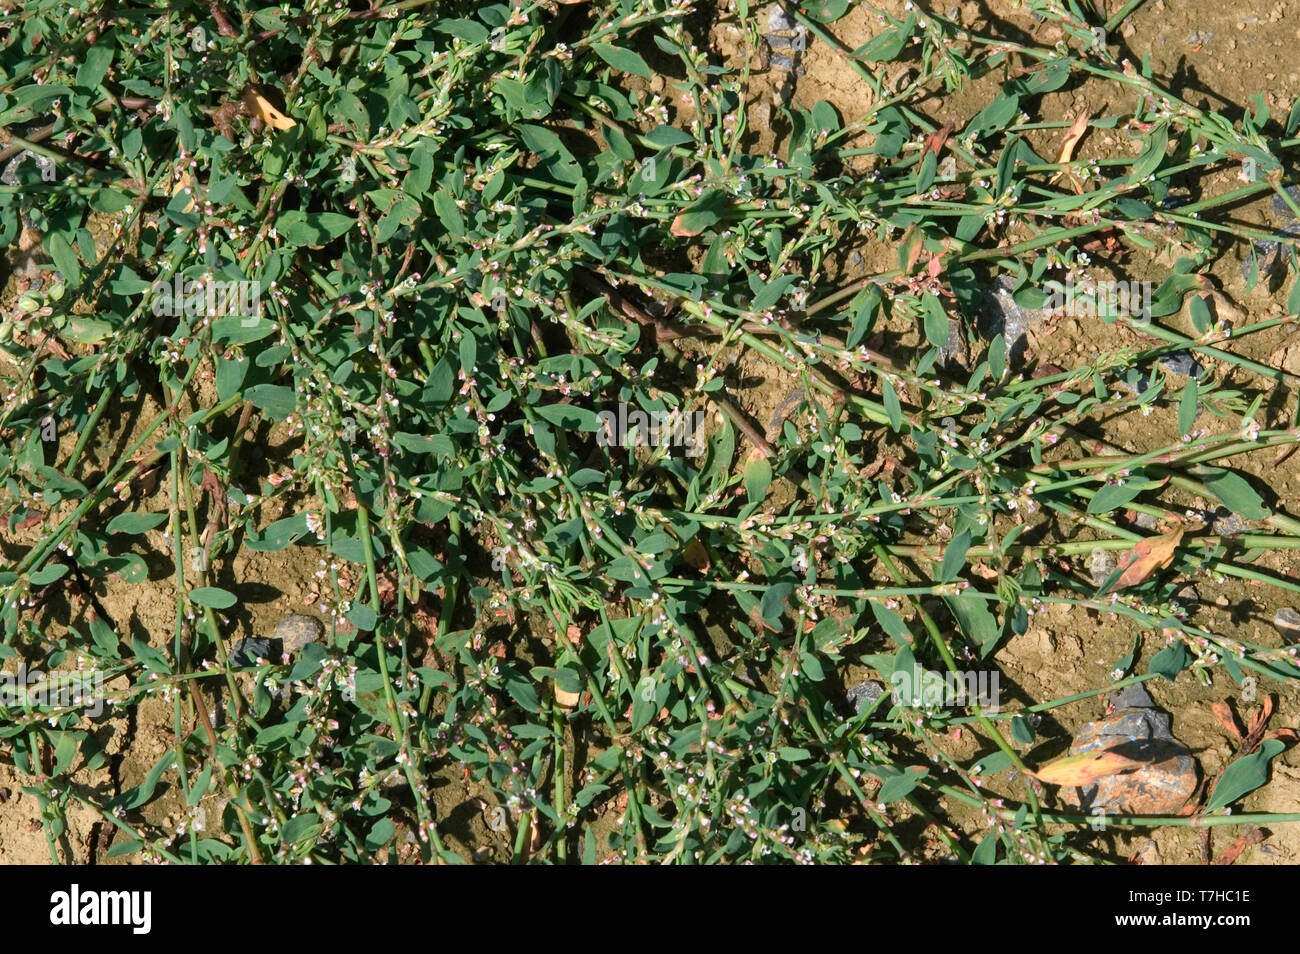 Gemeinsame knotgrass (Polygonum aviculare) ein ausgestrecktes schleichende Blüte ausdauernden Unkraut Pflanze mit kleinen Blüten. Stockfoto